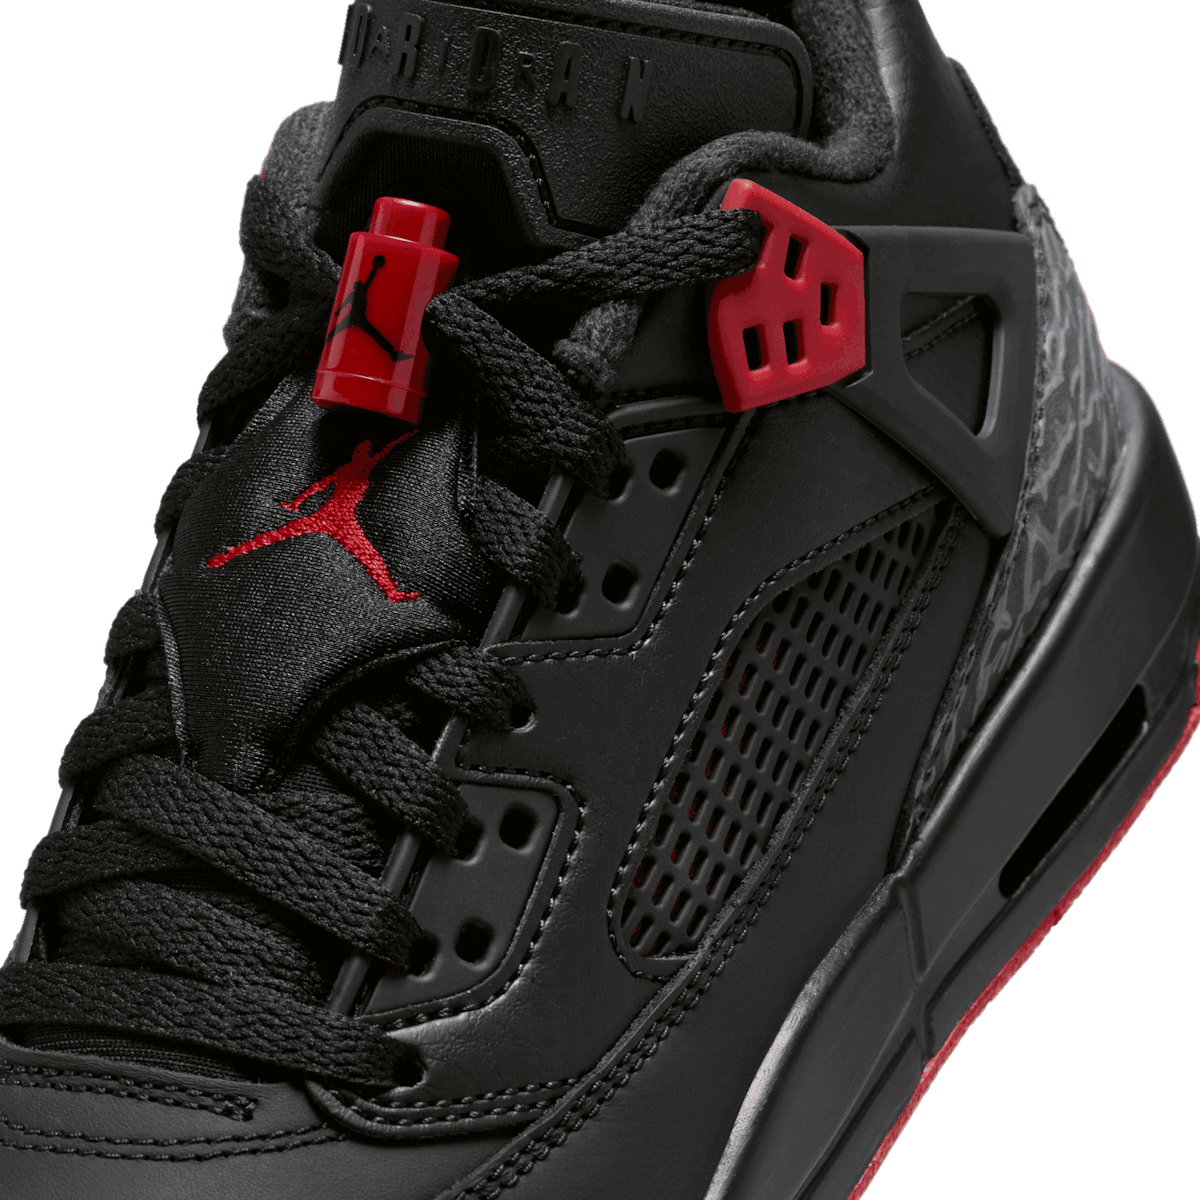 Air Jordan Spizike Low Bred (GS) - FQ3950-006 Raffles and Release Date